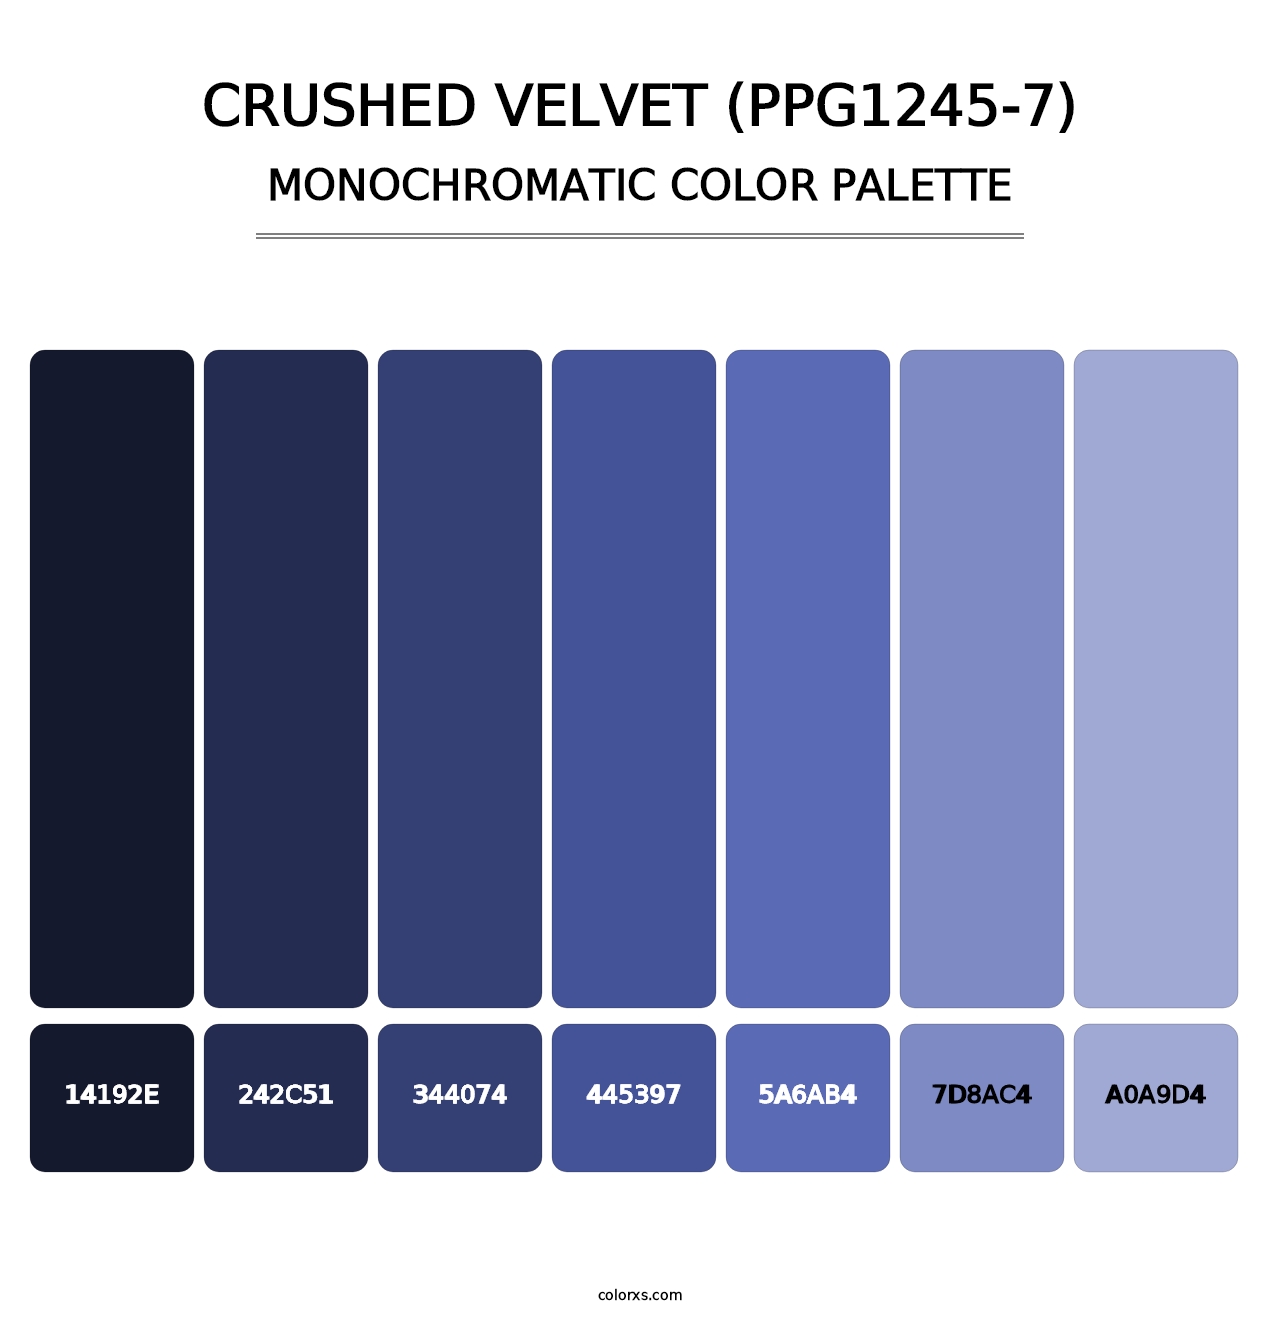 Crushed Velvet (PPG1245-7) - Monochromatic Color Palette